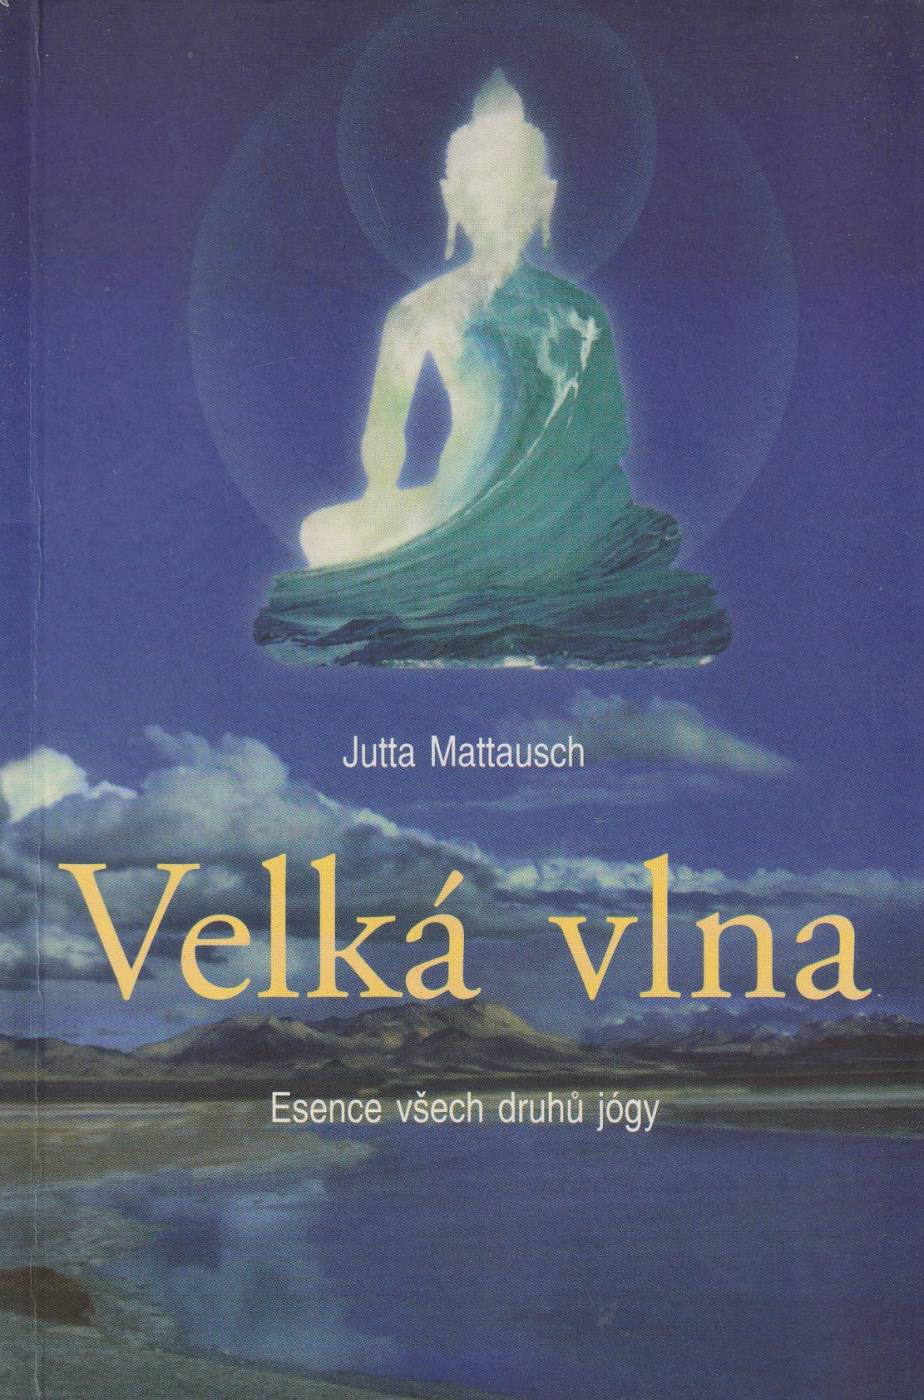 Mattausch, Jutta – Velká vlna, Esence všech druhů jógy